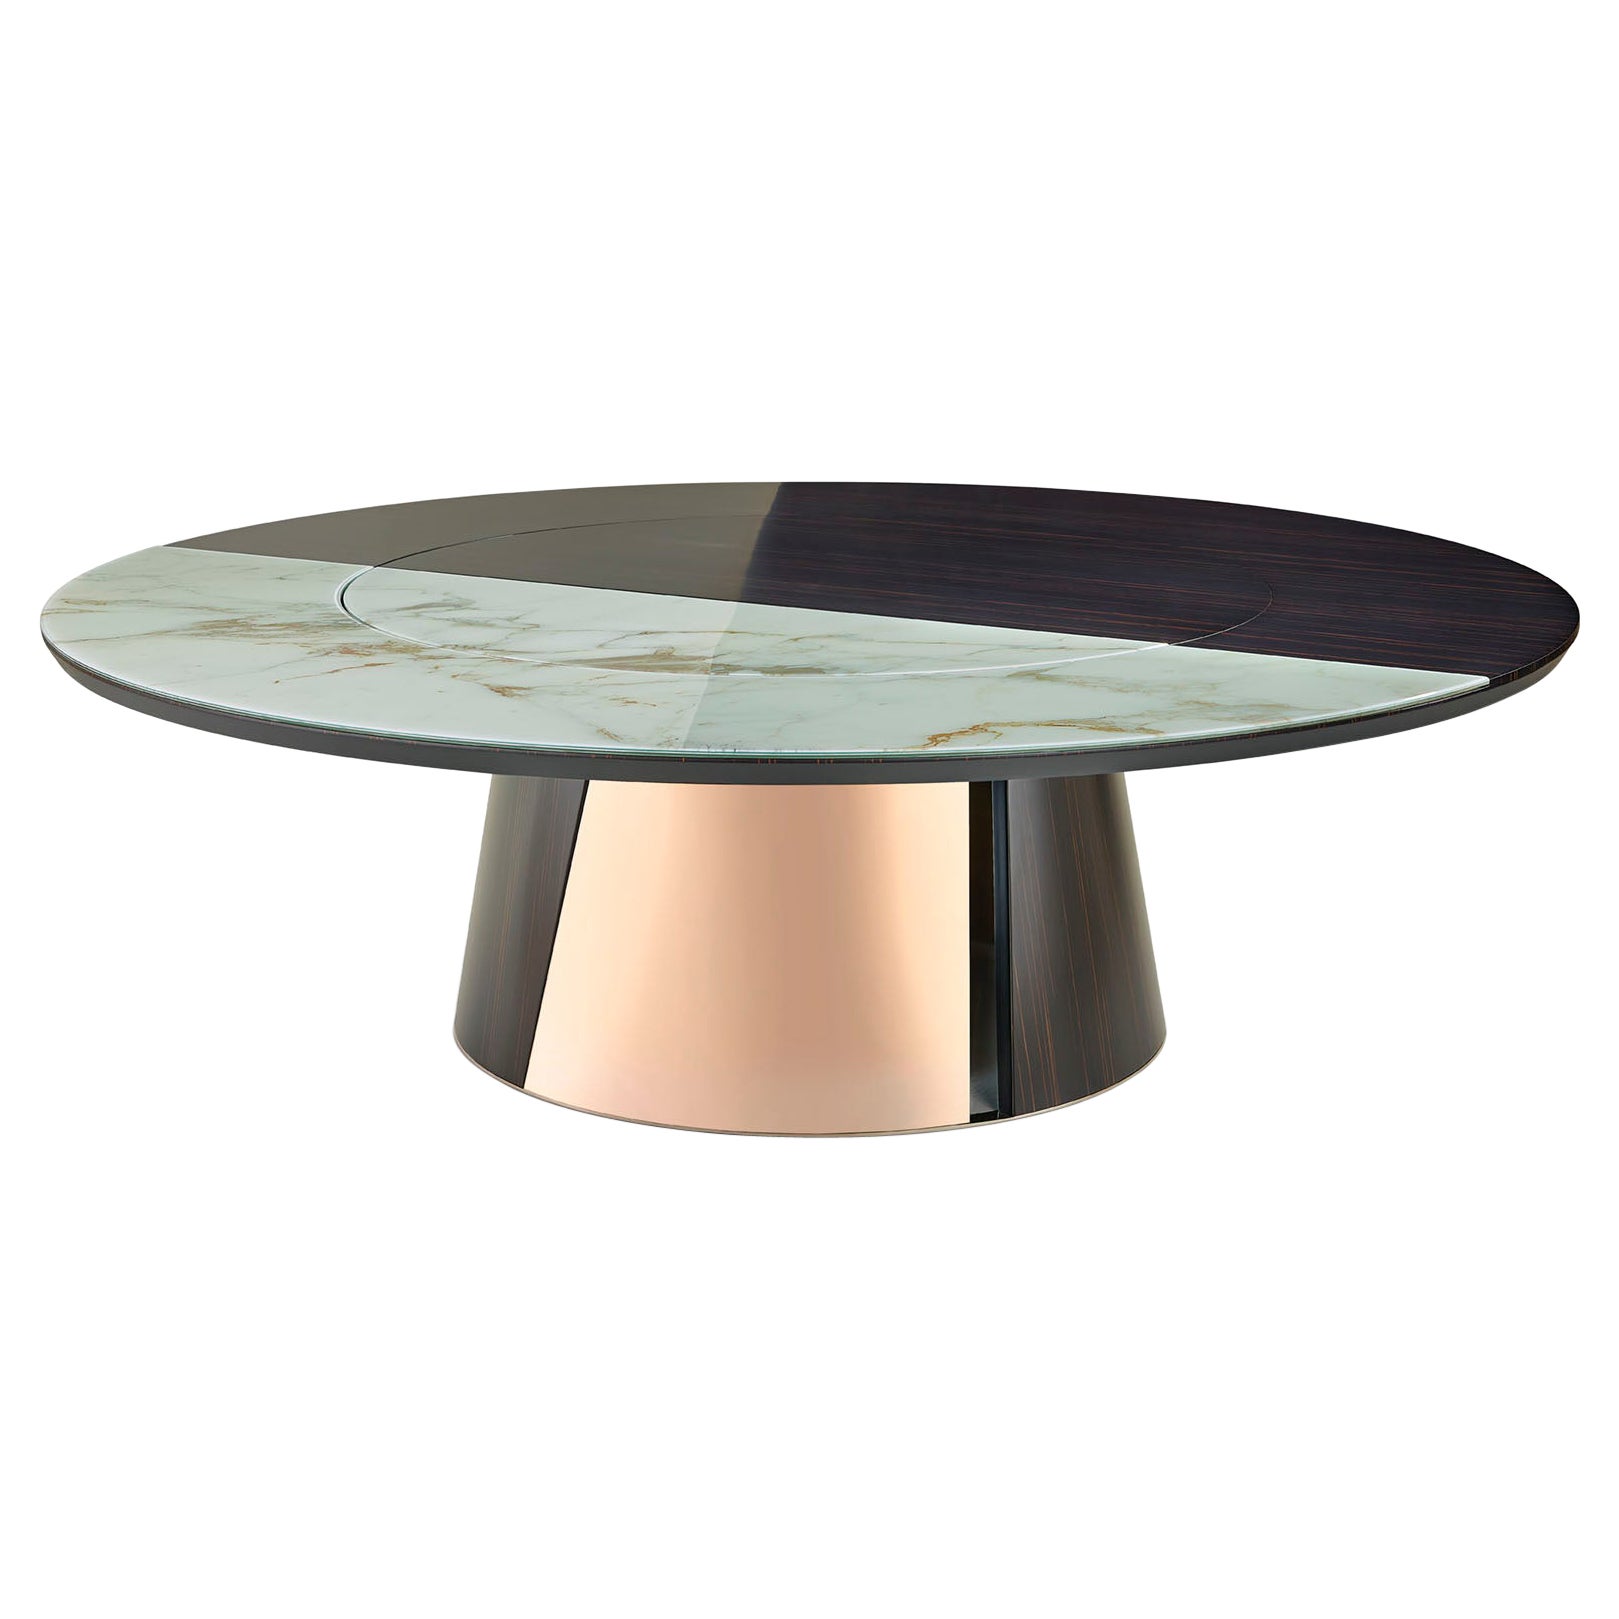 Pieds de table ronds personnalisables en métal brillant ou en ébène satiné ou en chêne